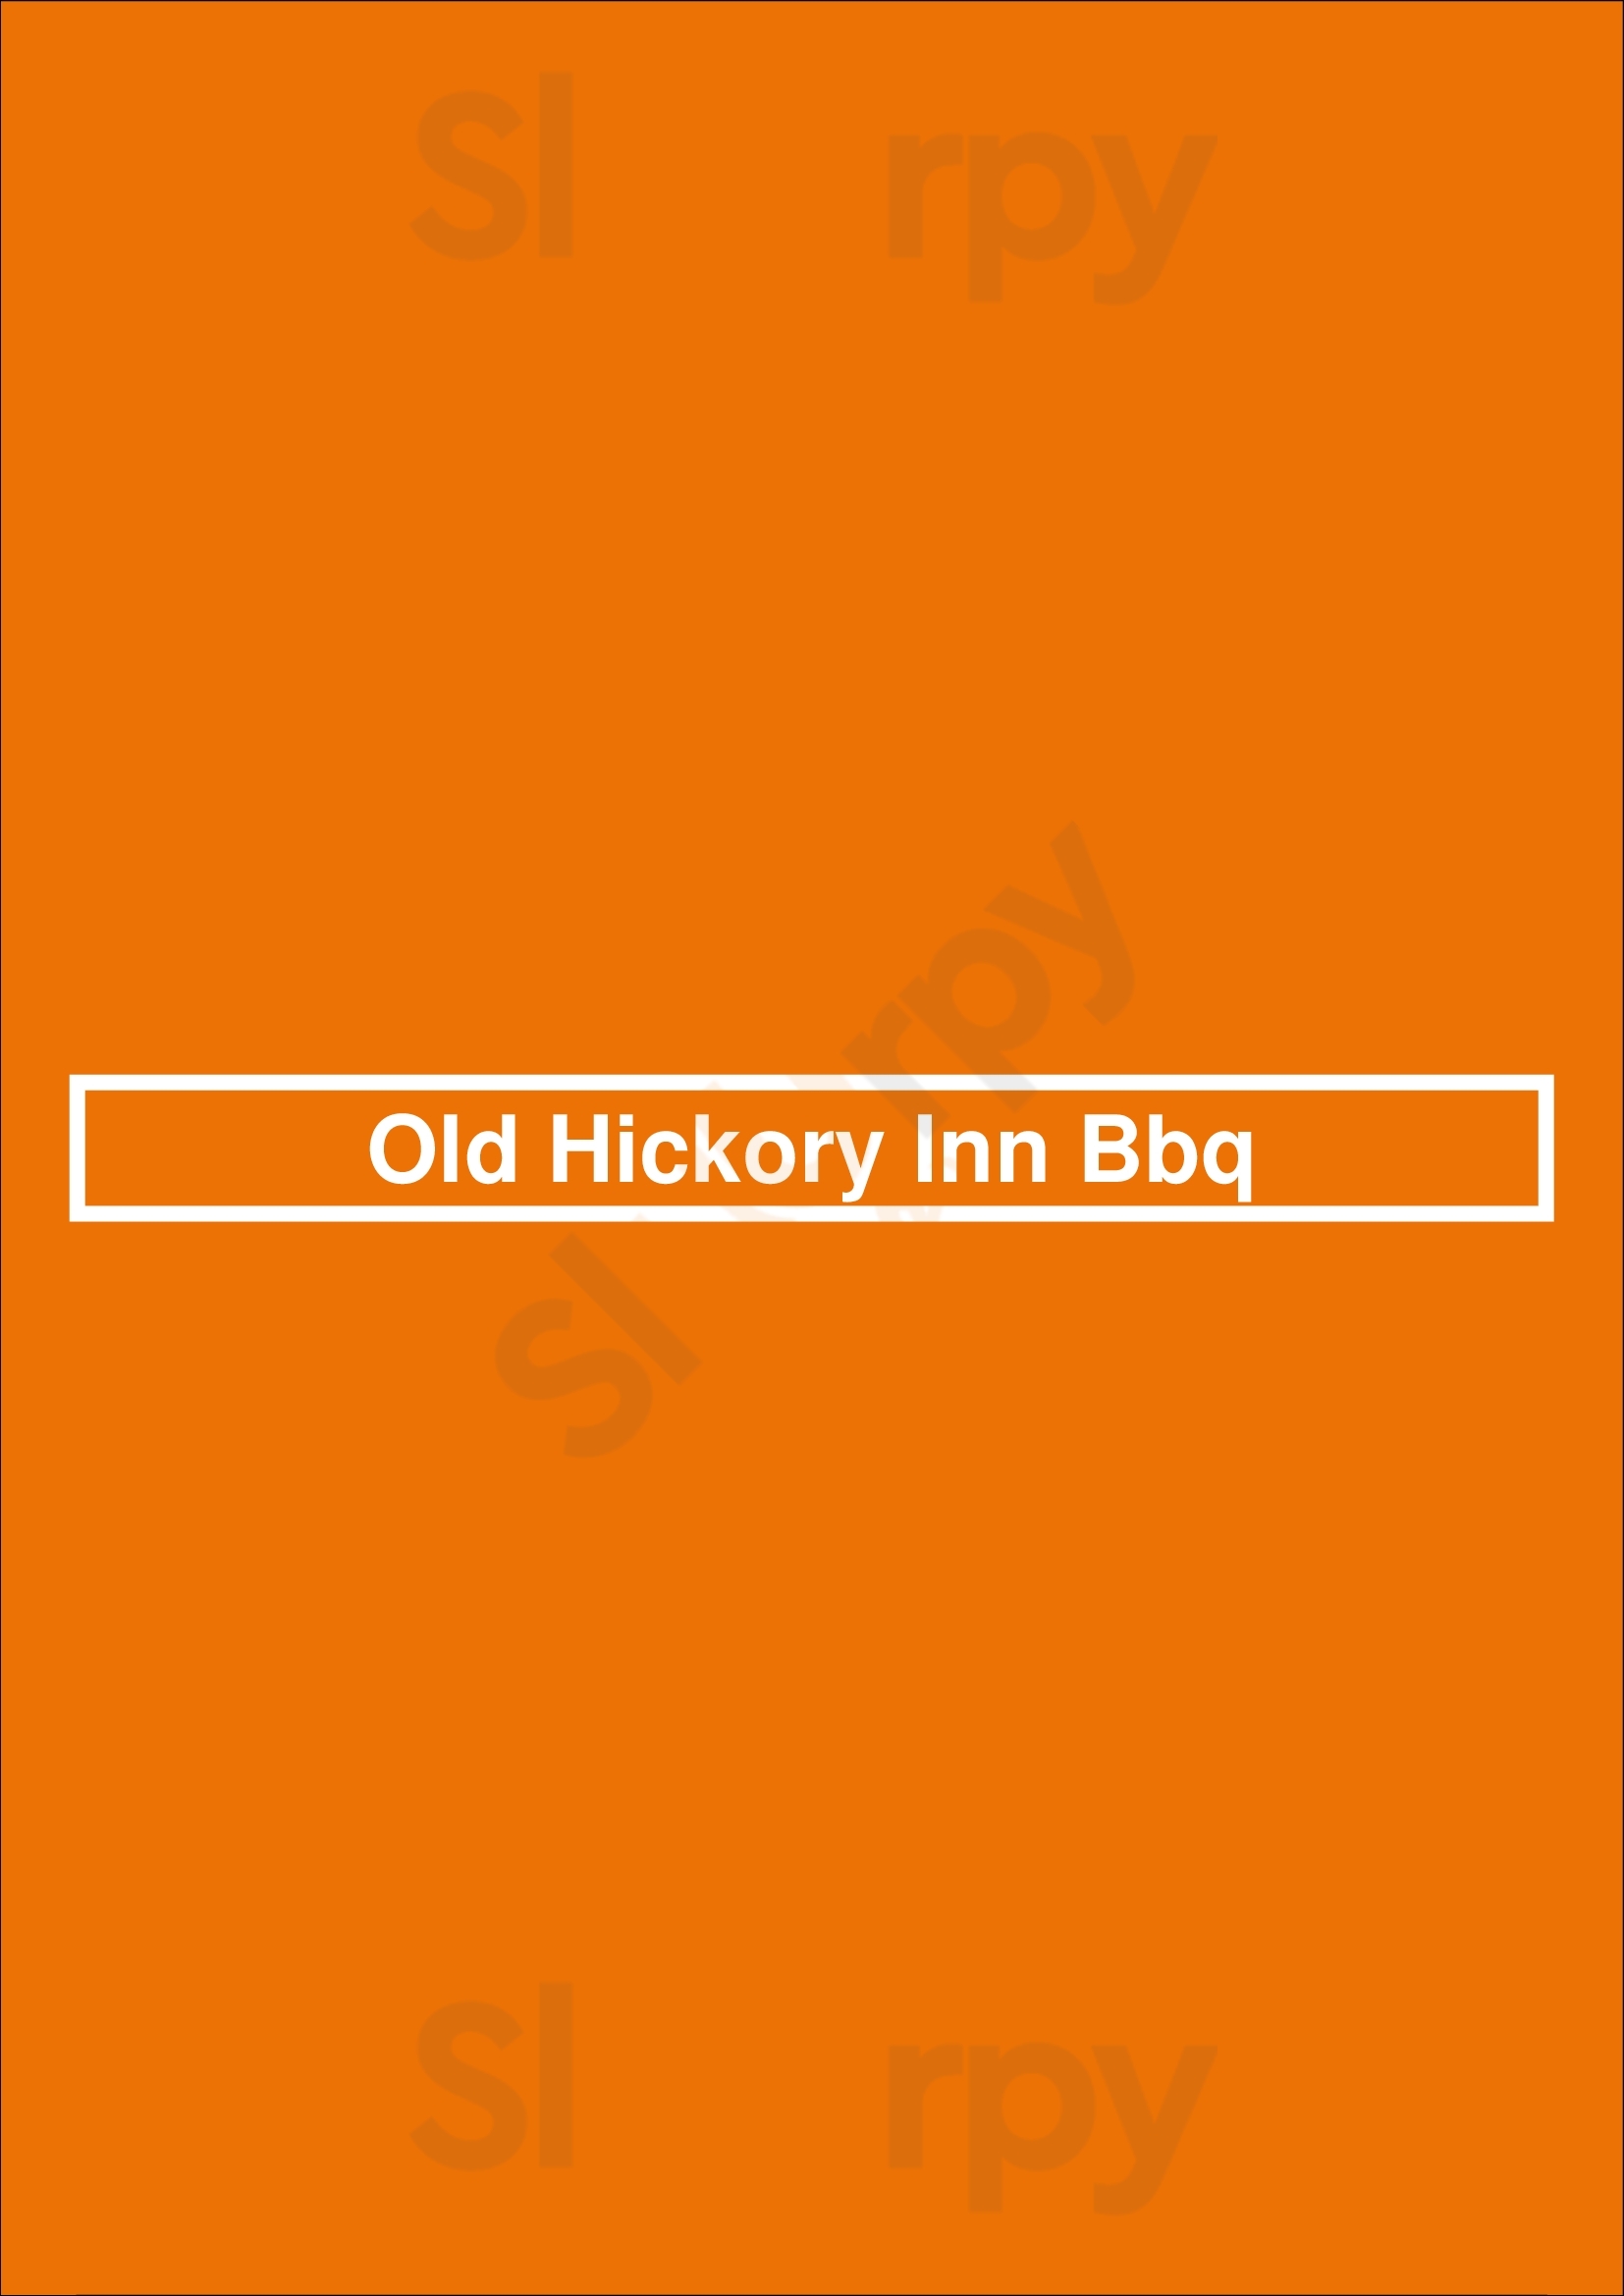 Old Hickory Inn Bbq Houston Menu - 1